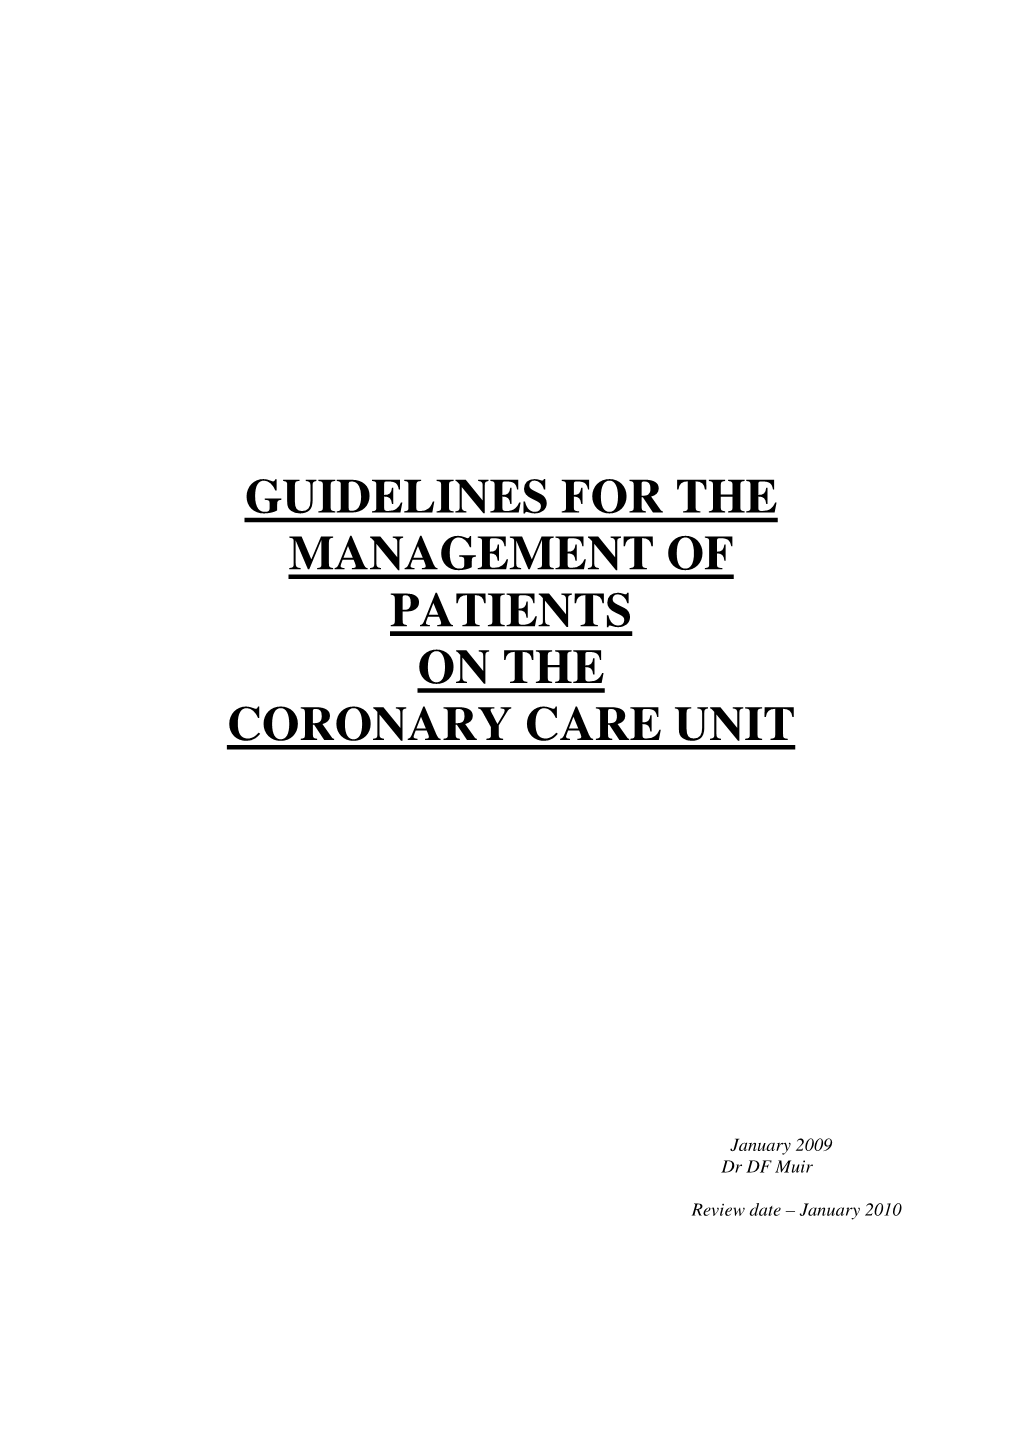 CCU Guidelines.Pdf